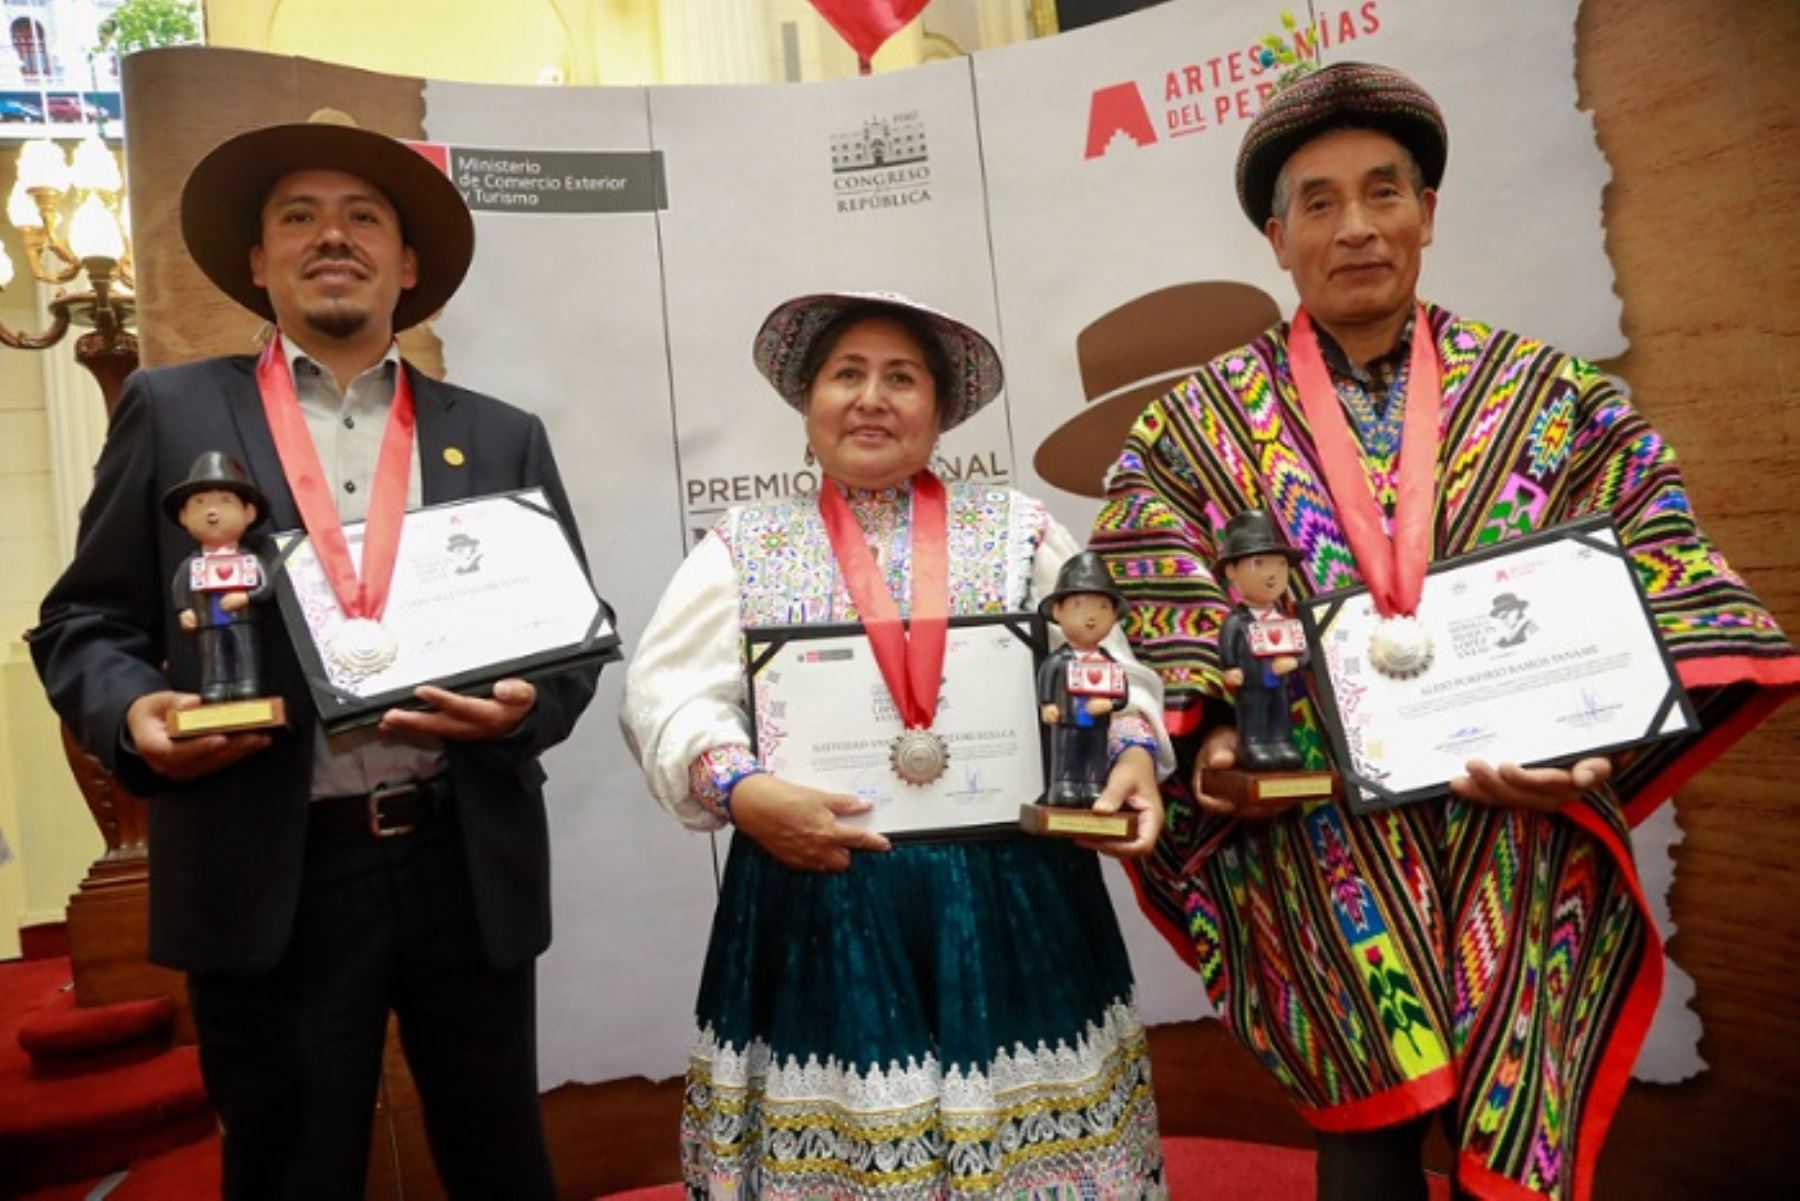 Los artesanos galardonados son: Alejo Porfirio Ramos (Ayacucho), Larry Segundo Orellana (Cusco) y Natividad Condori Sullca (Arequipa).